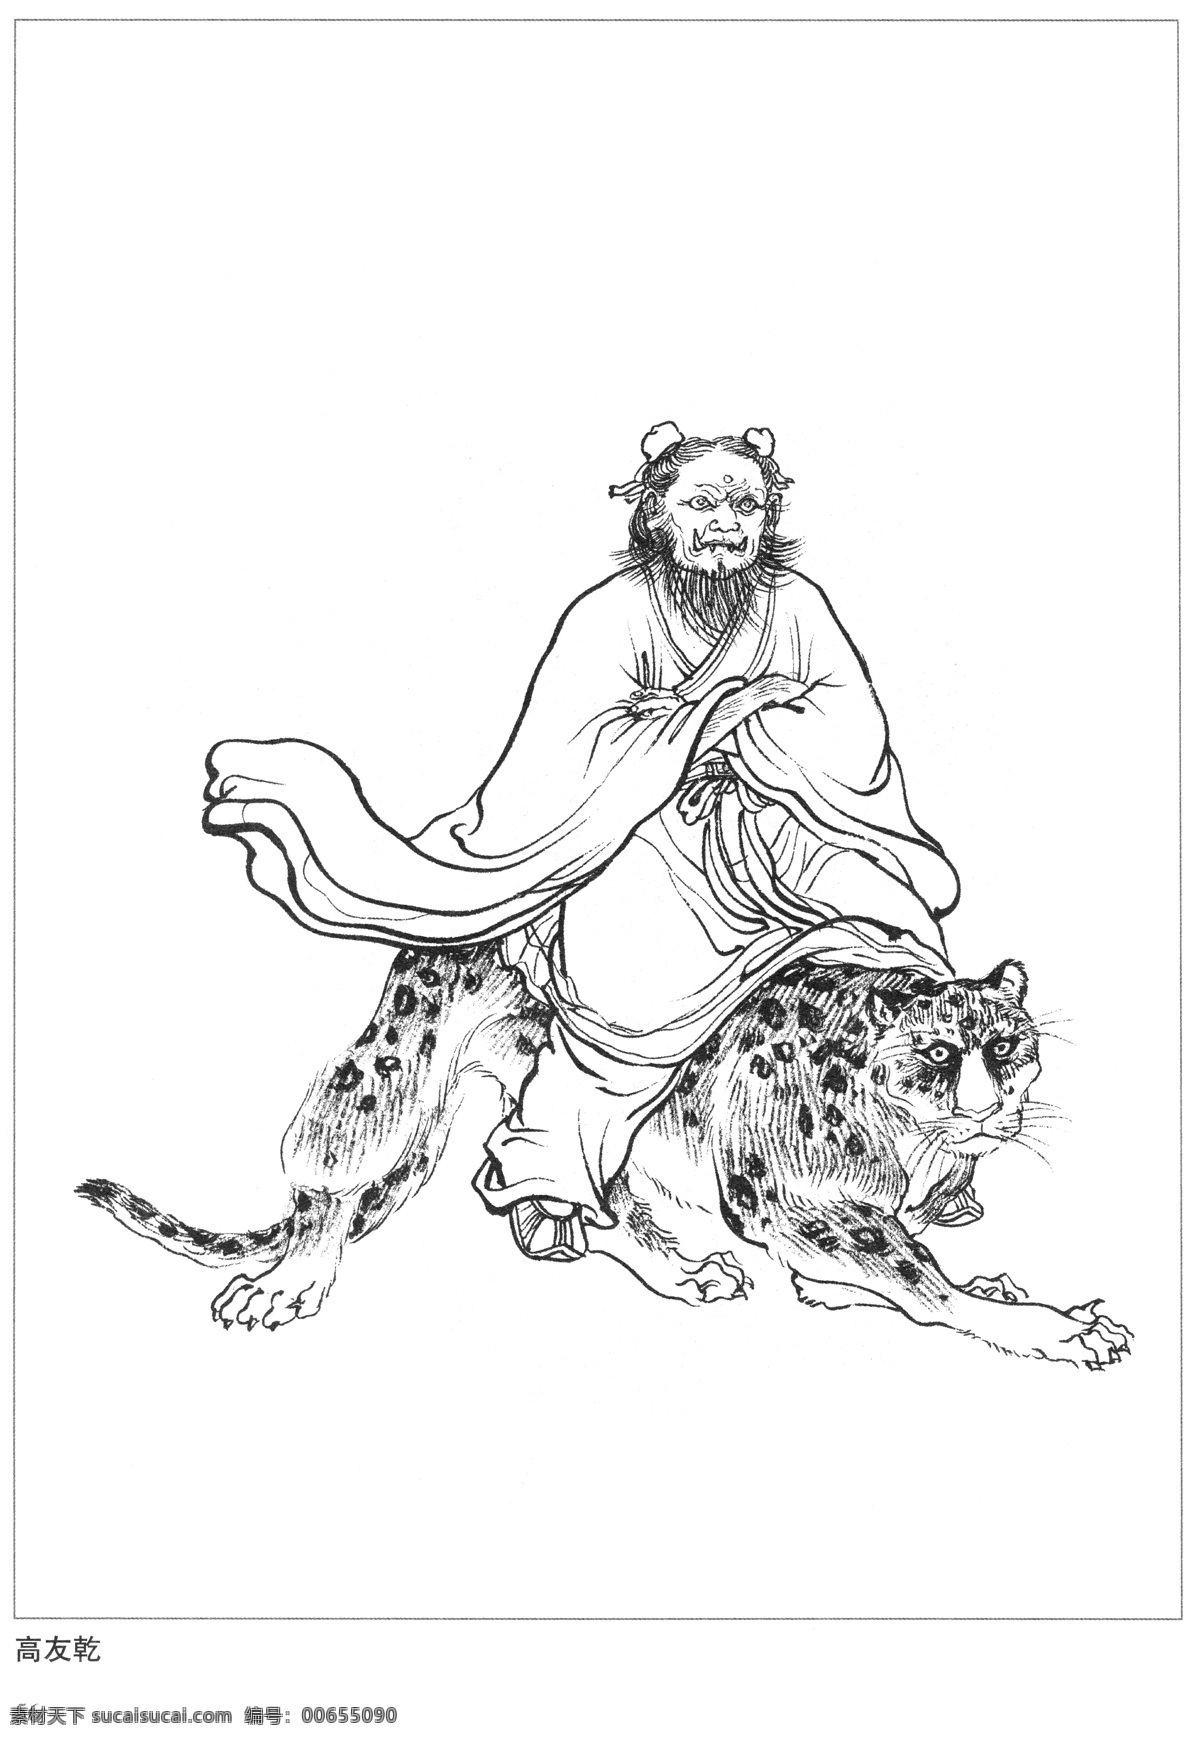 高友乾 封神演义 古代 神仙 白描 人物 图 文化艺术 传统文化